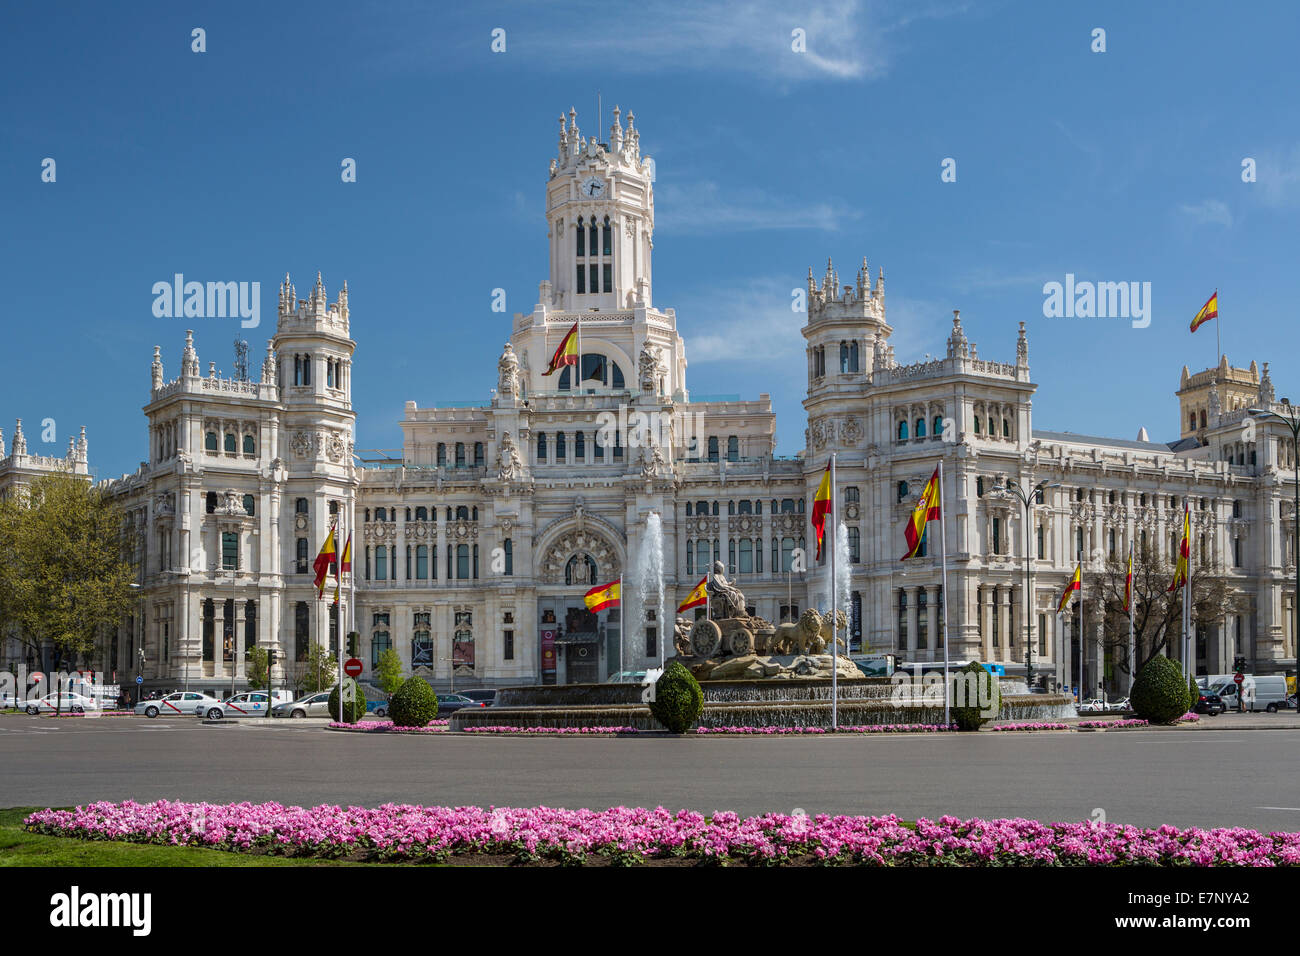 Bâtiment, Cibeles, Madrid, l'Hôtel de Ville, Ville, Espagne, Europe, Square, l'architecture, fleurs, fontaine, printemps, tourisme, voyages Banque D'Images